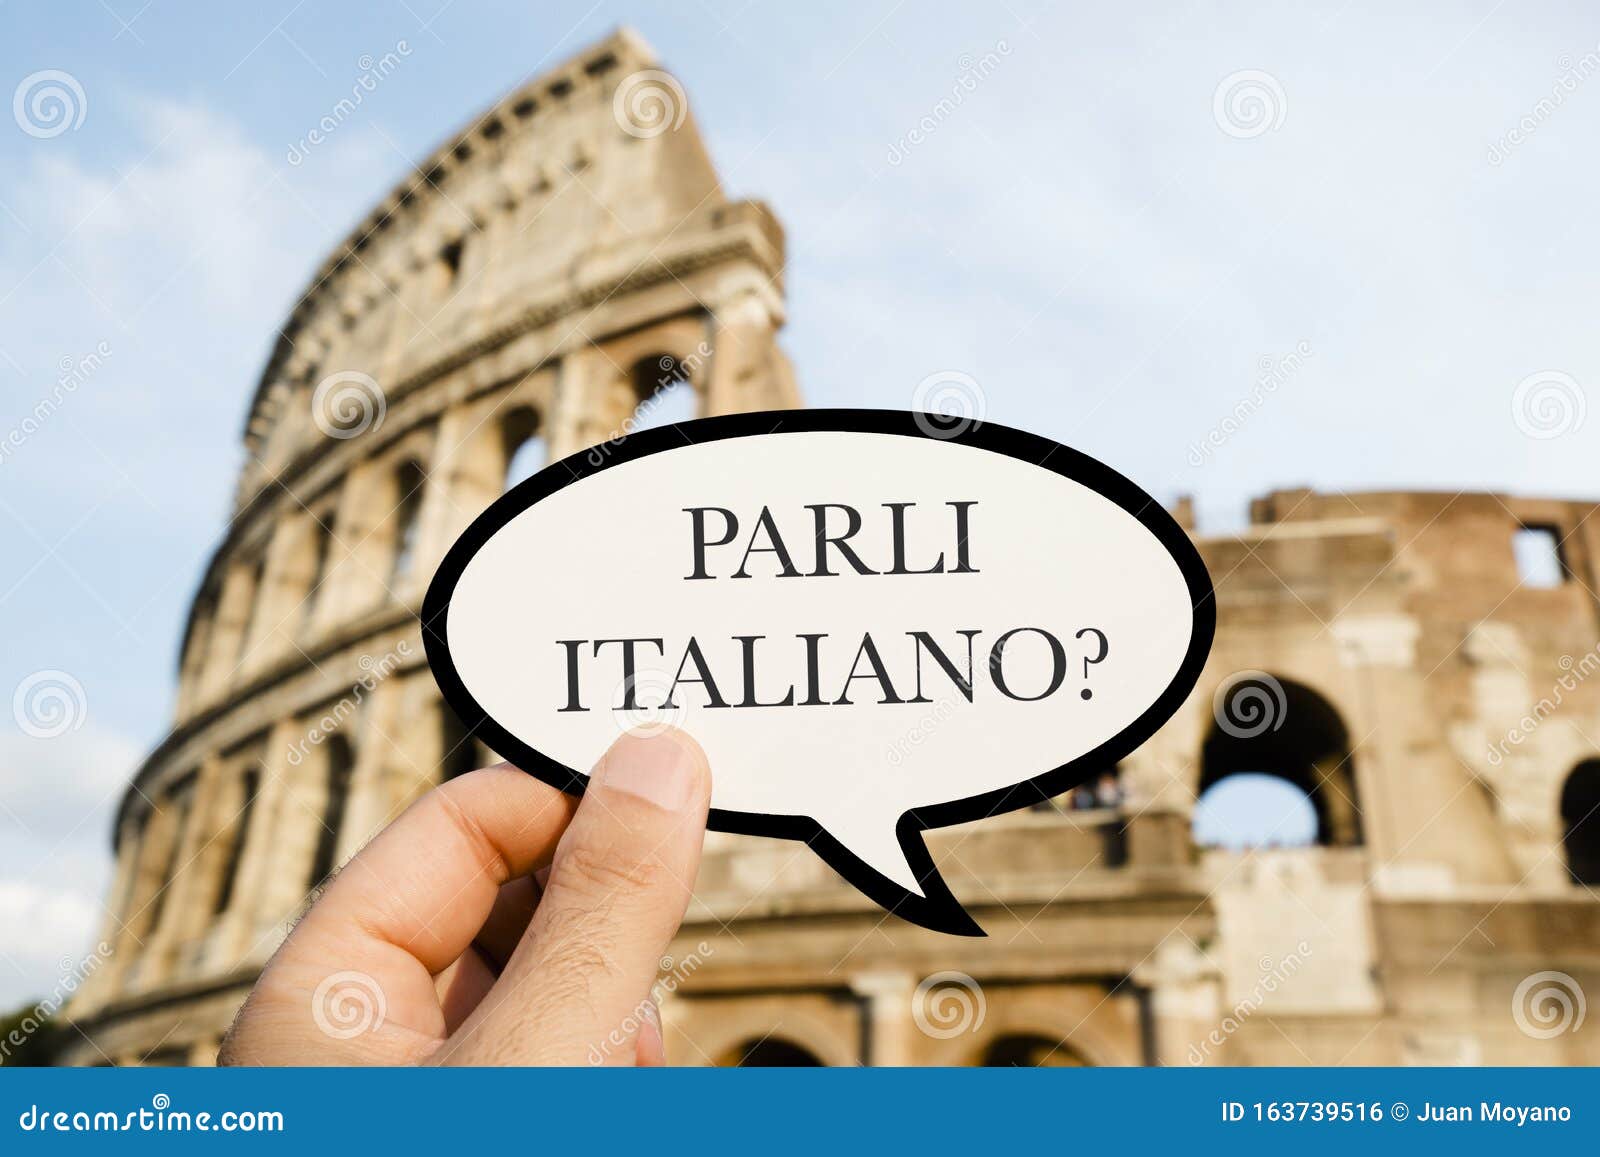 question do you speak italian, in italian